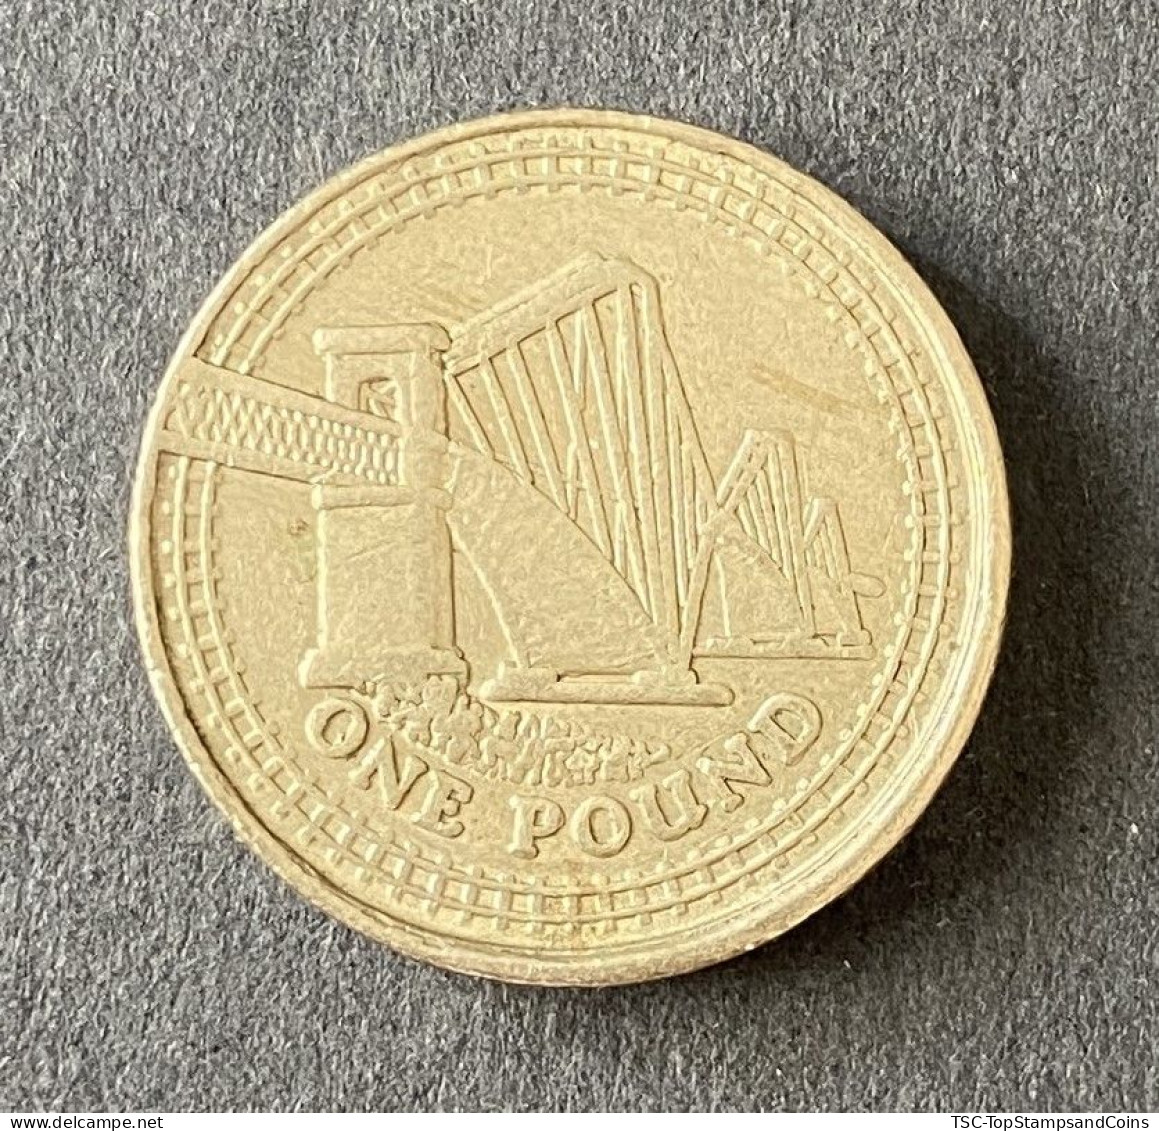 $$GB900 - Queen Elizabeth II - 1 Pound Coin - 4th Portrait - Forth Railway Bridge - Great-Britain - 2008 - 1 Pound